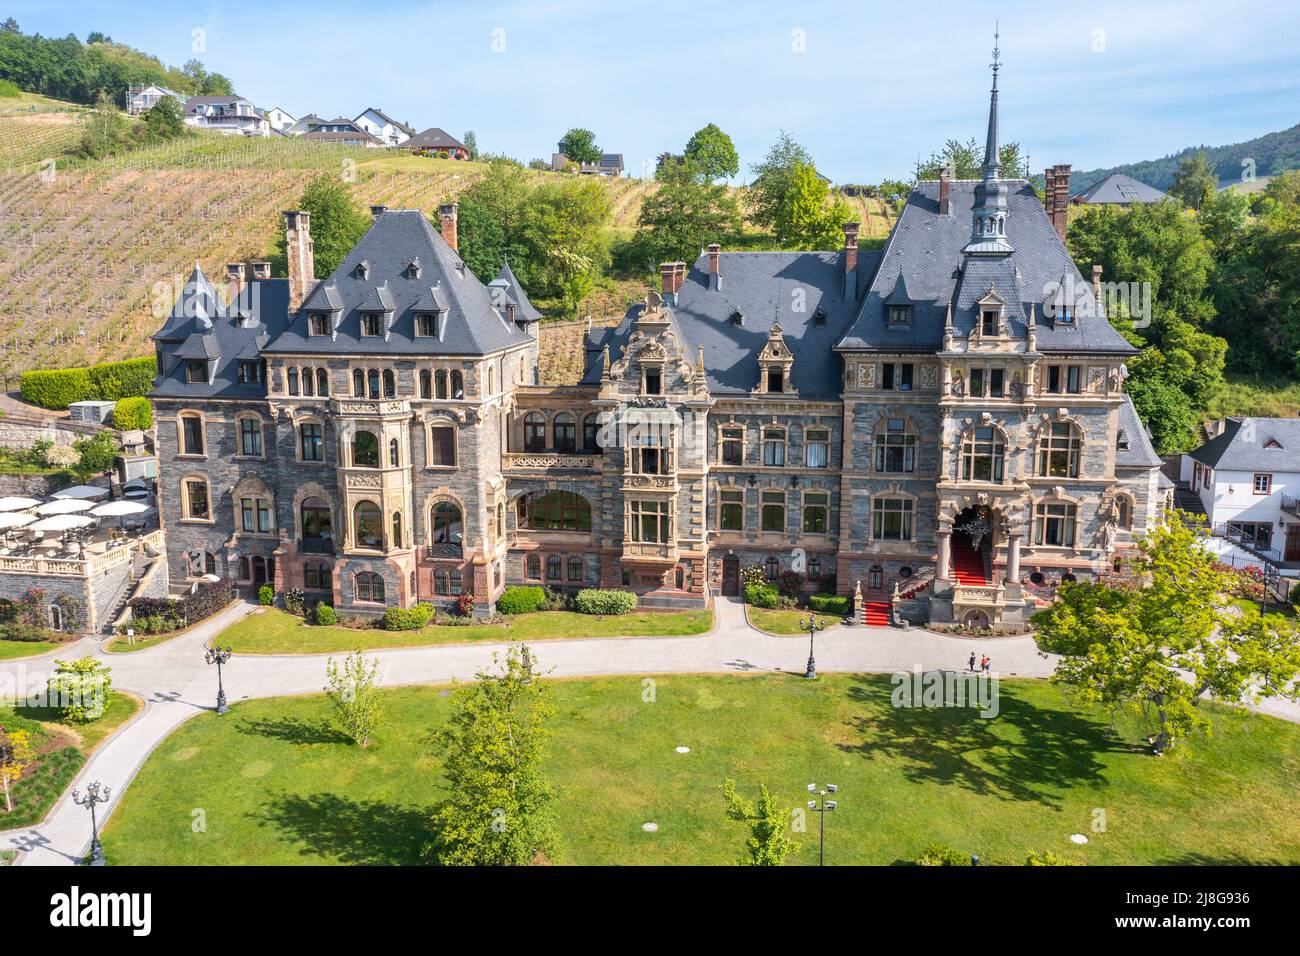 Schloss Lieser, Lieser, vallée de la Moselle, Allemagne Banque D'Images